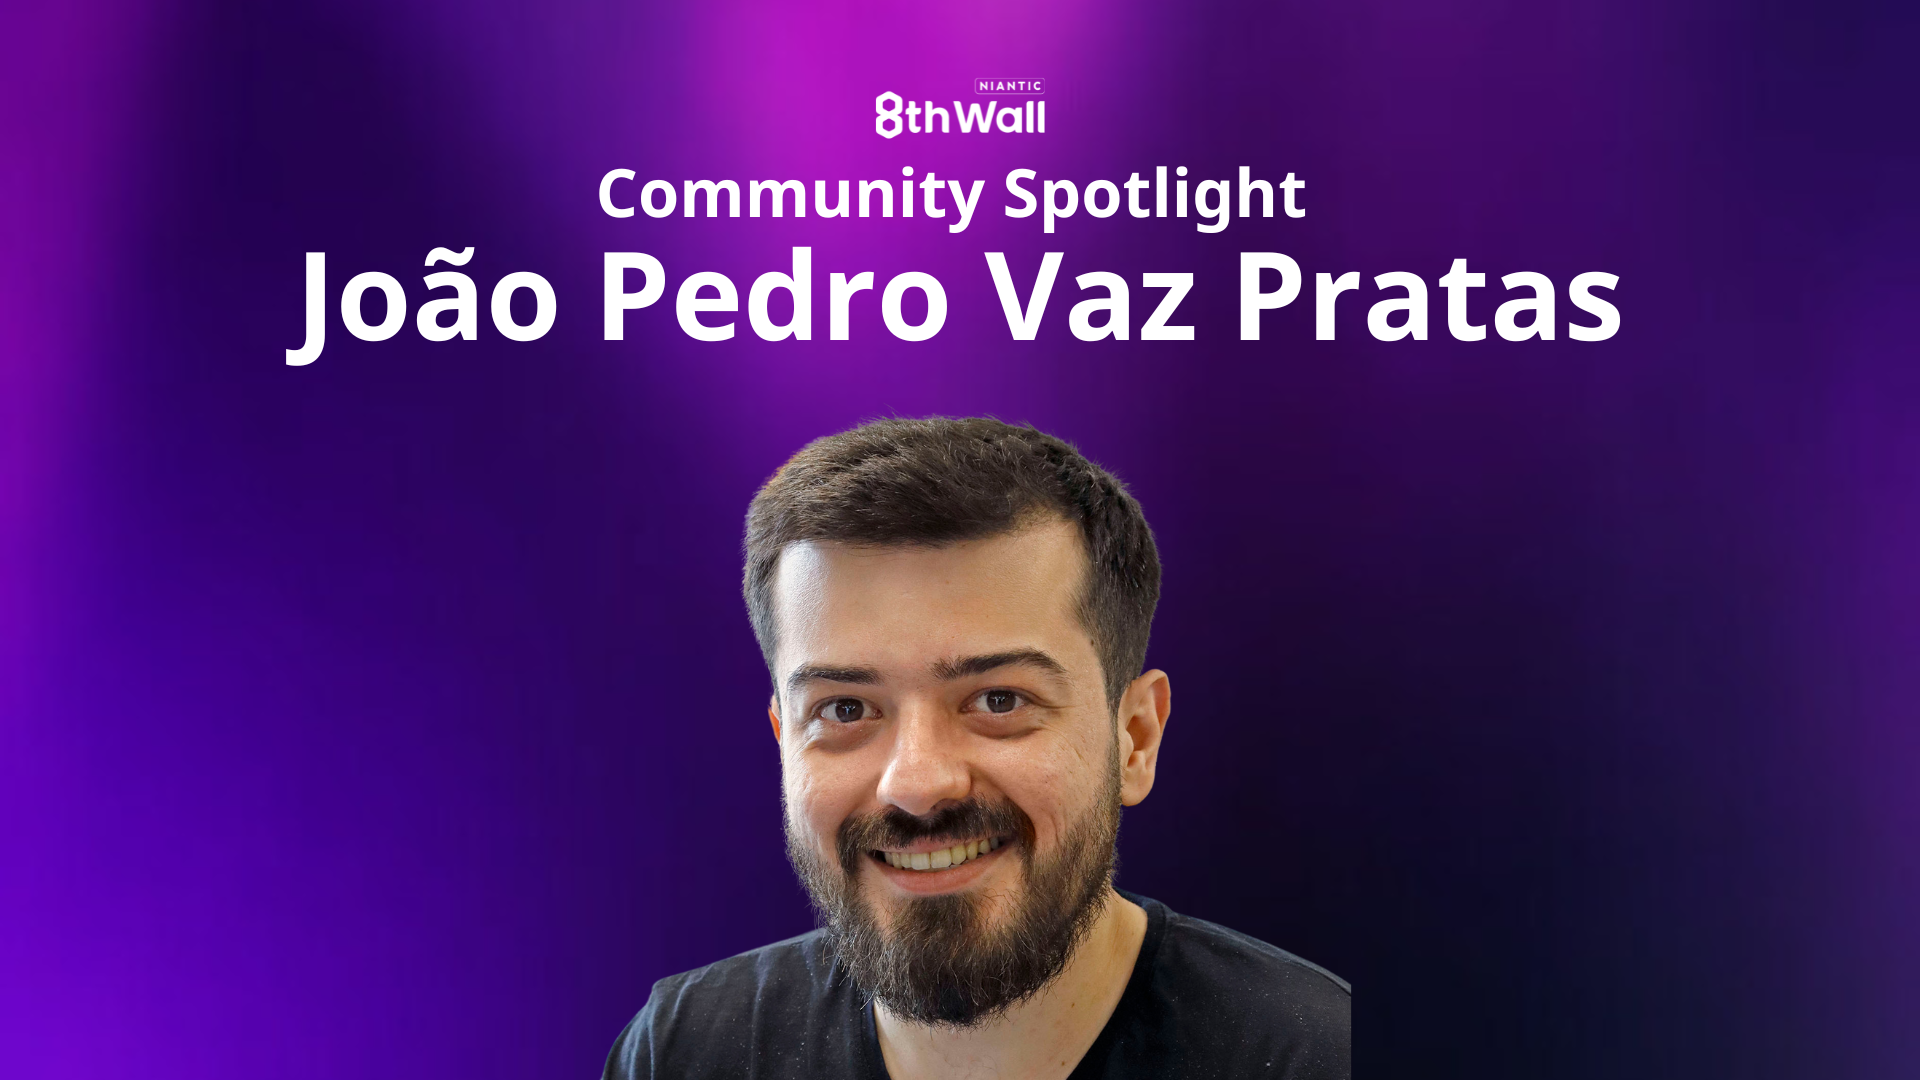 Community Spotlight: Meet João Pedro Vaz Pratas